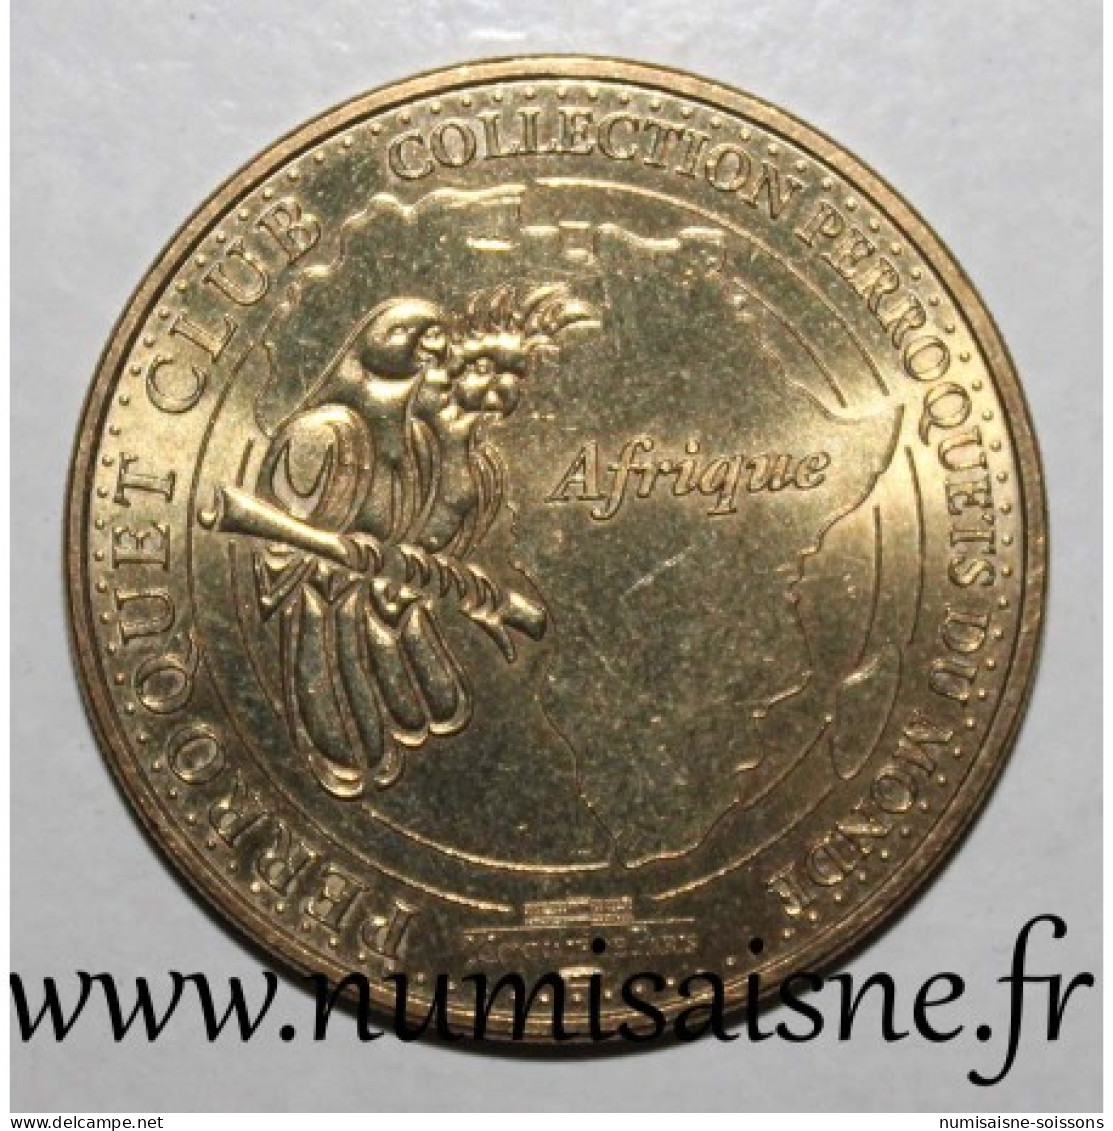 67 - WEITBRUCH - PERROQUET CLUB - Sénégal - Monnaie De Paris - 2012 - 2012